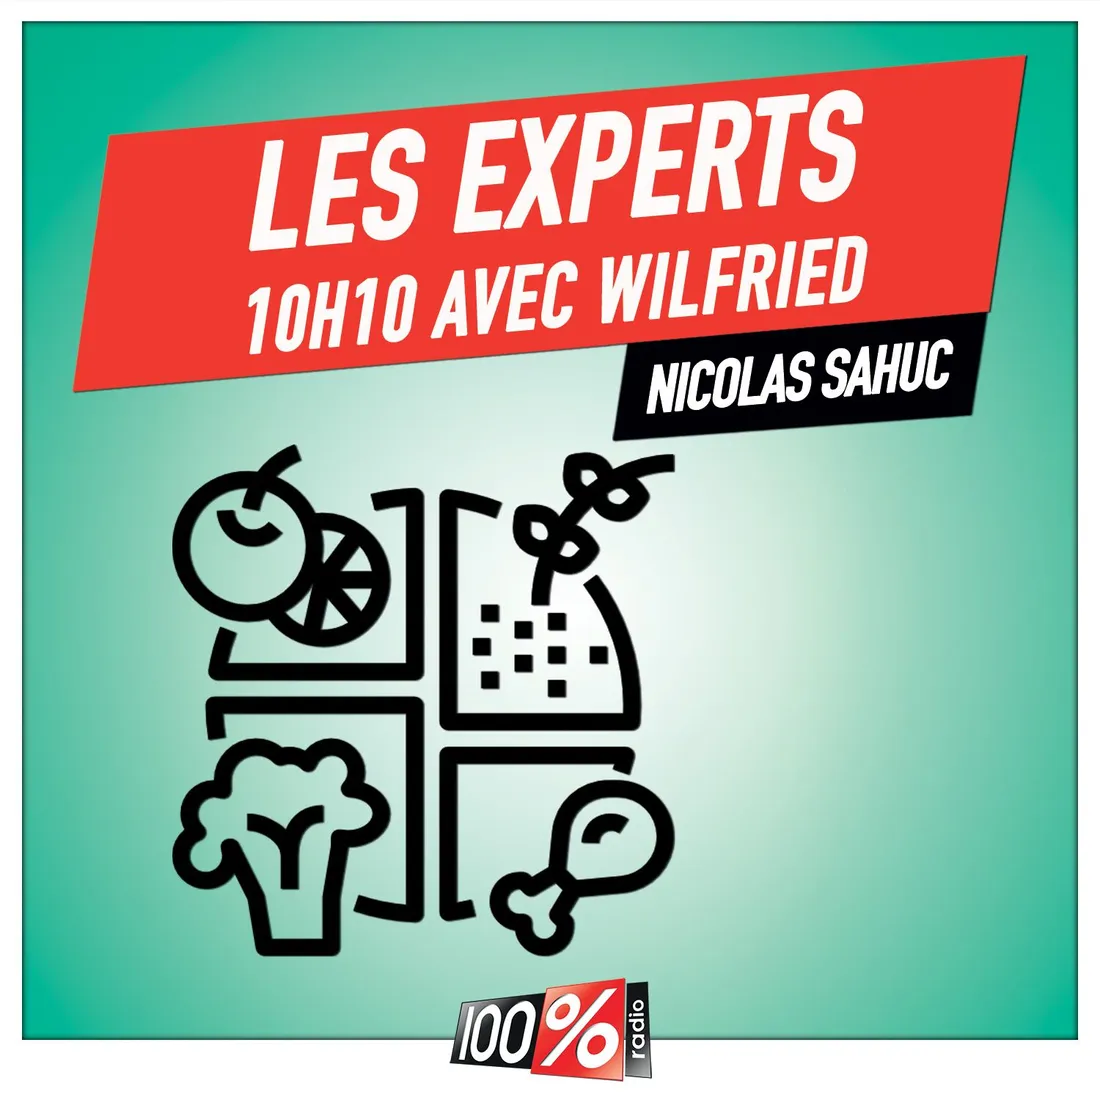 Les experts de Wilfried, Nicolas Sahuc